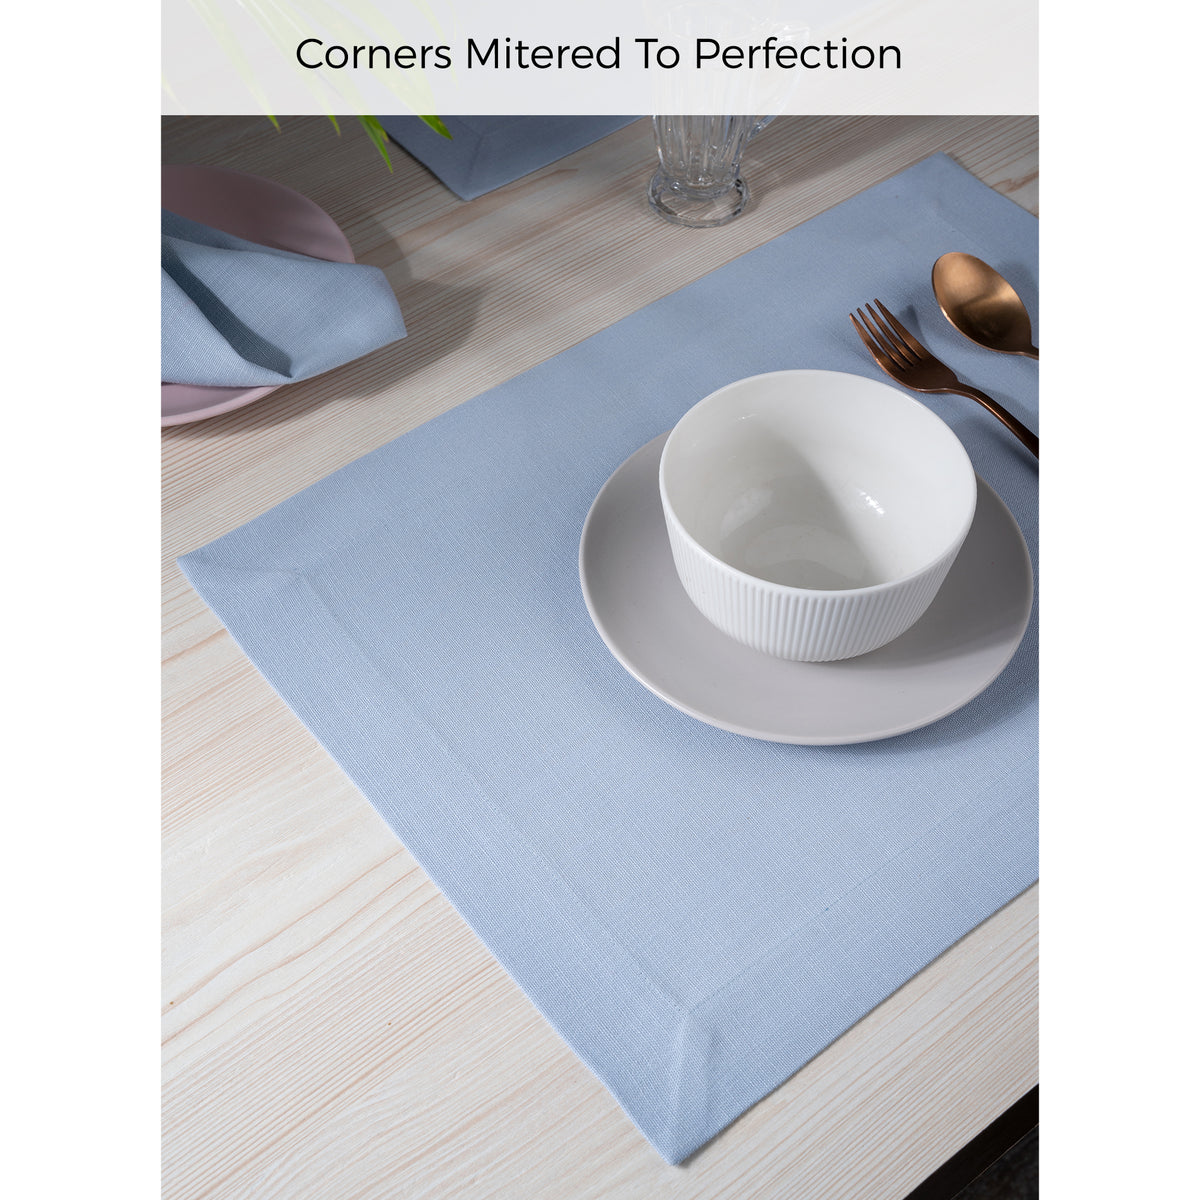 Powder Blue Linen Textured Placemats 14 x 19 Inch Set of 4 - Mitered Corner